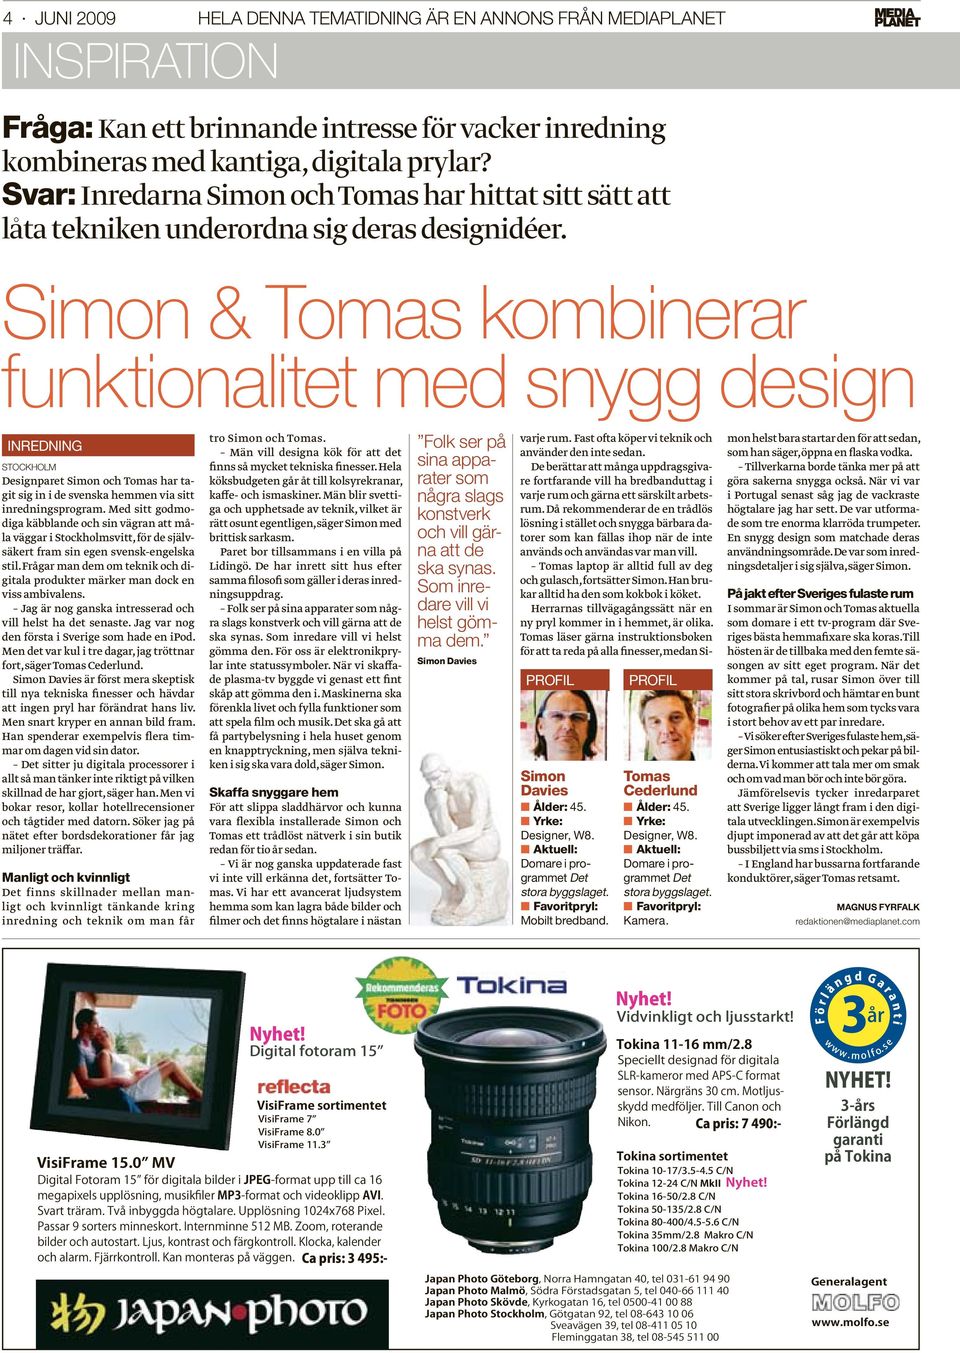 Simon & Tomas kombinerar funktionalitet med snygg design INREDNING STOCKHOLM Designparet Simon och Tomas har tagit sig in i de svenska hemmen via sitt inredningsprogram.